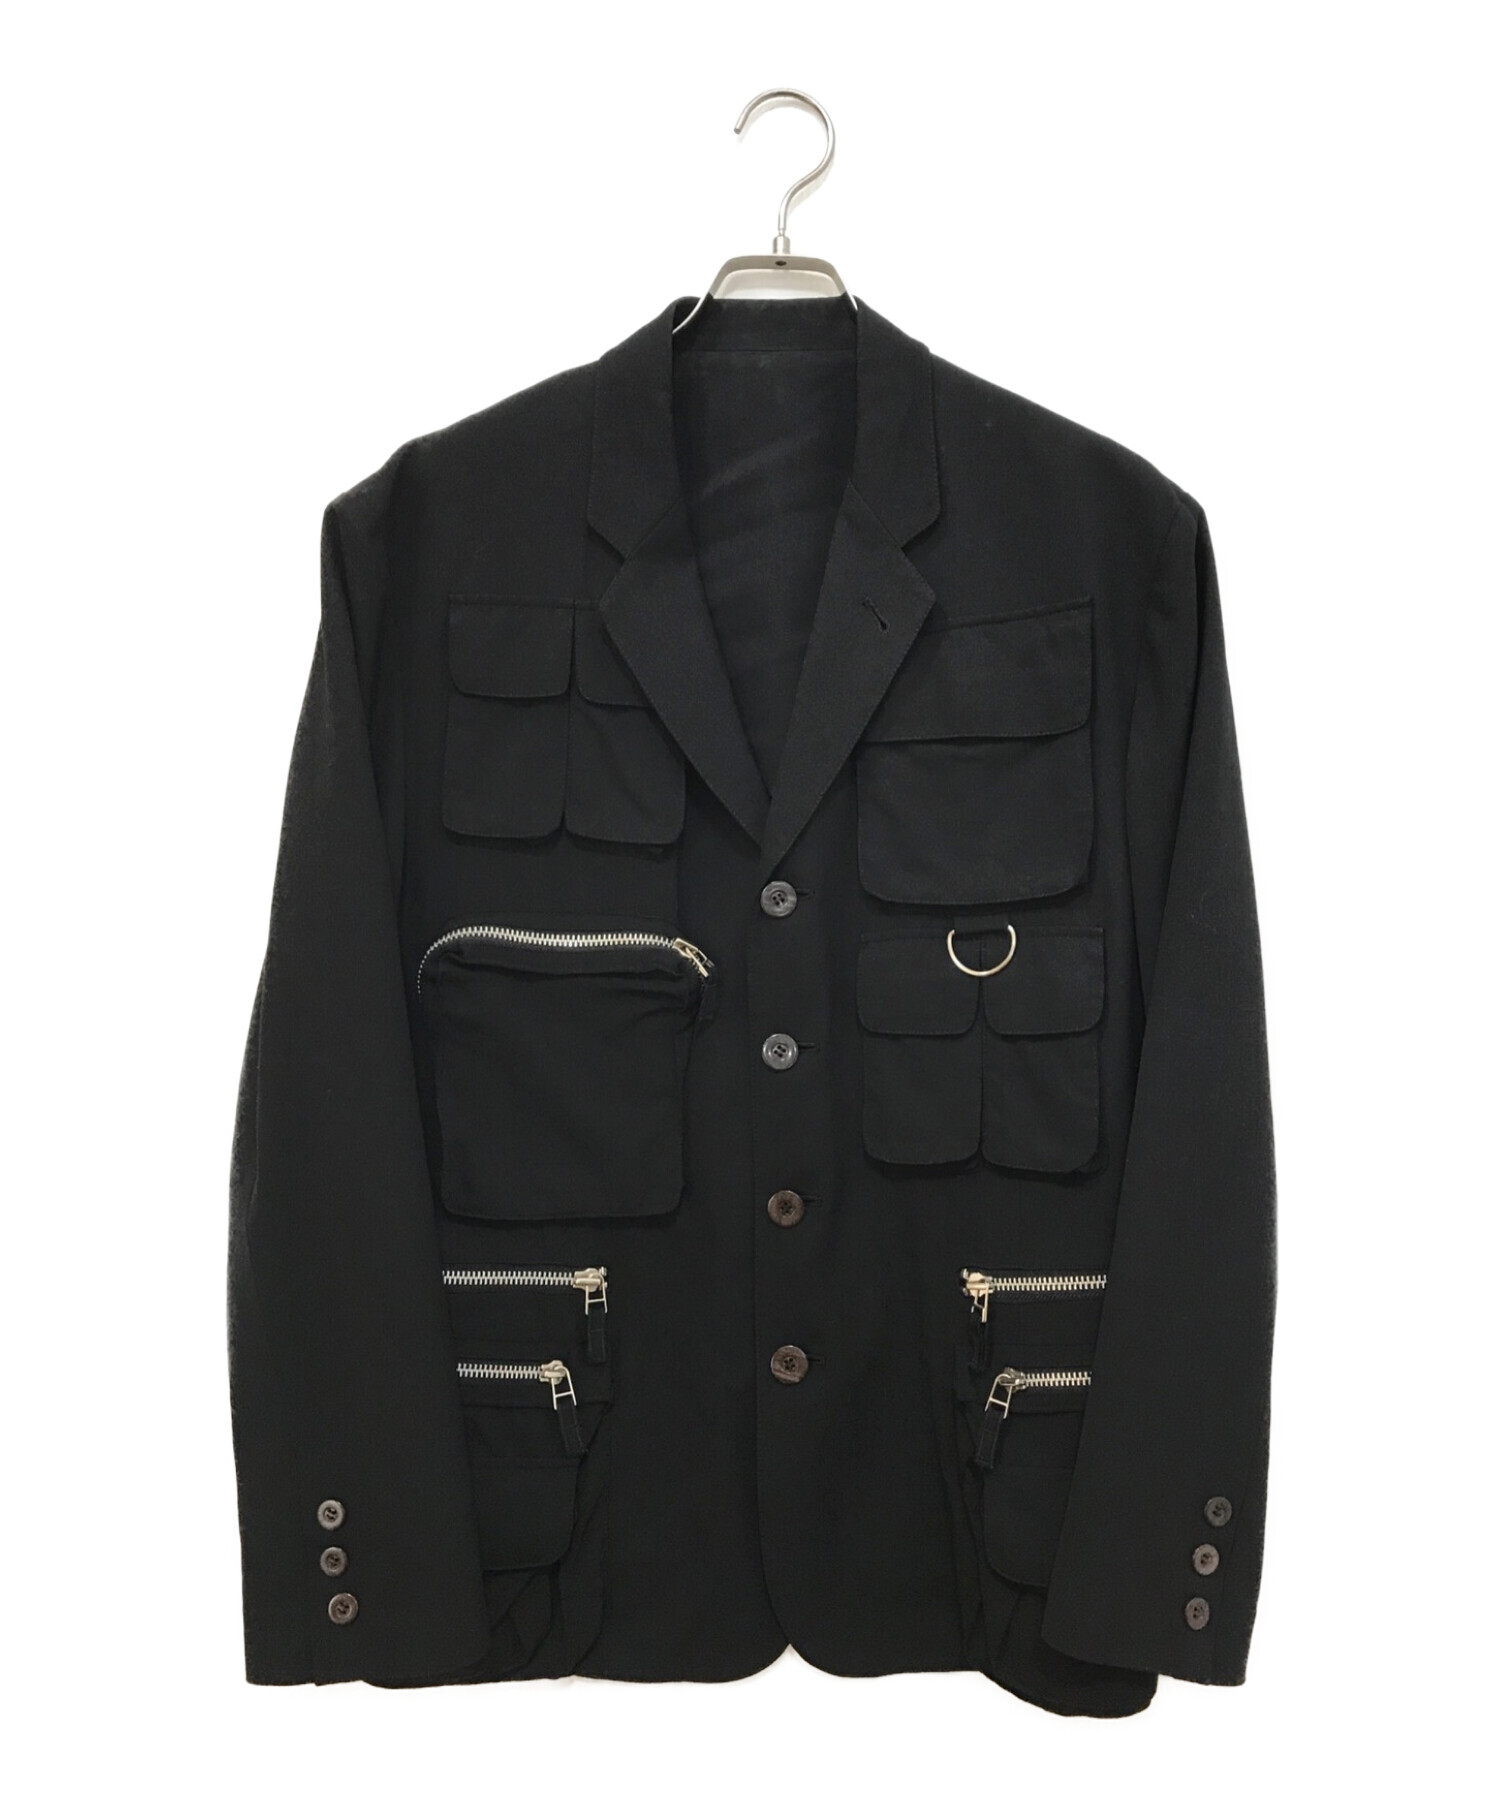 Jean Paul GAULTIER HOMME (ジャンポールゴルチェオム) マルチポケットジップデザインジャケット ブラック サイズ:48